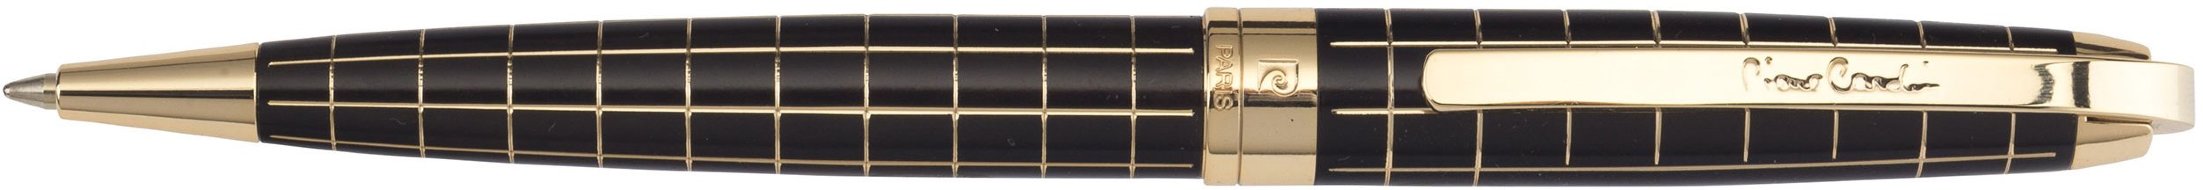 Шариковая ручка Pierre Cardin Progress черный лак, гравировка, позолота